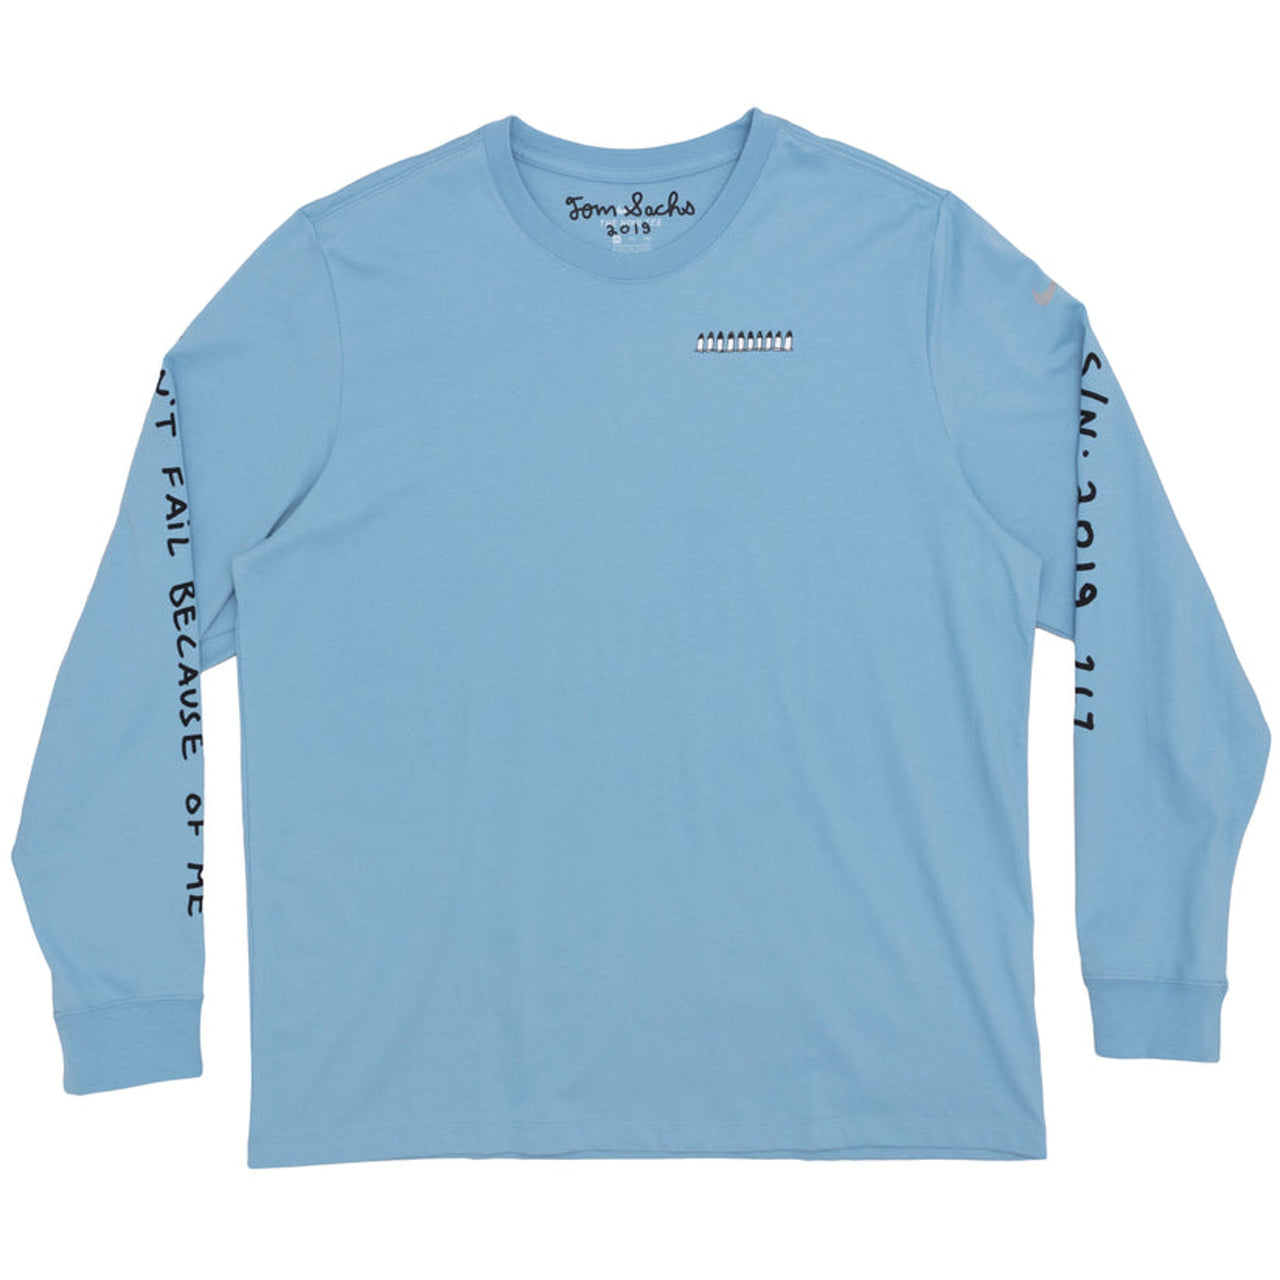 Nike Tom Sachs NRG Longsleeve T-shirt "Skyline Blue"